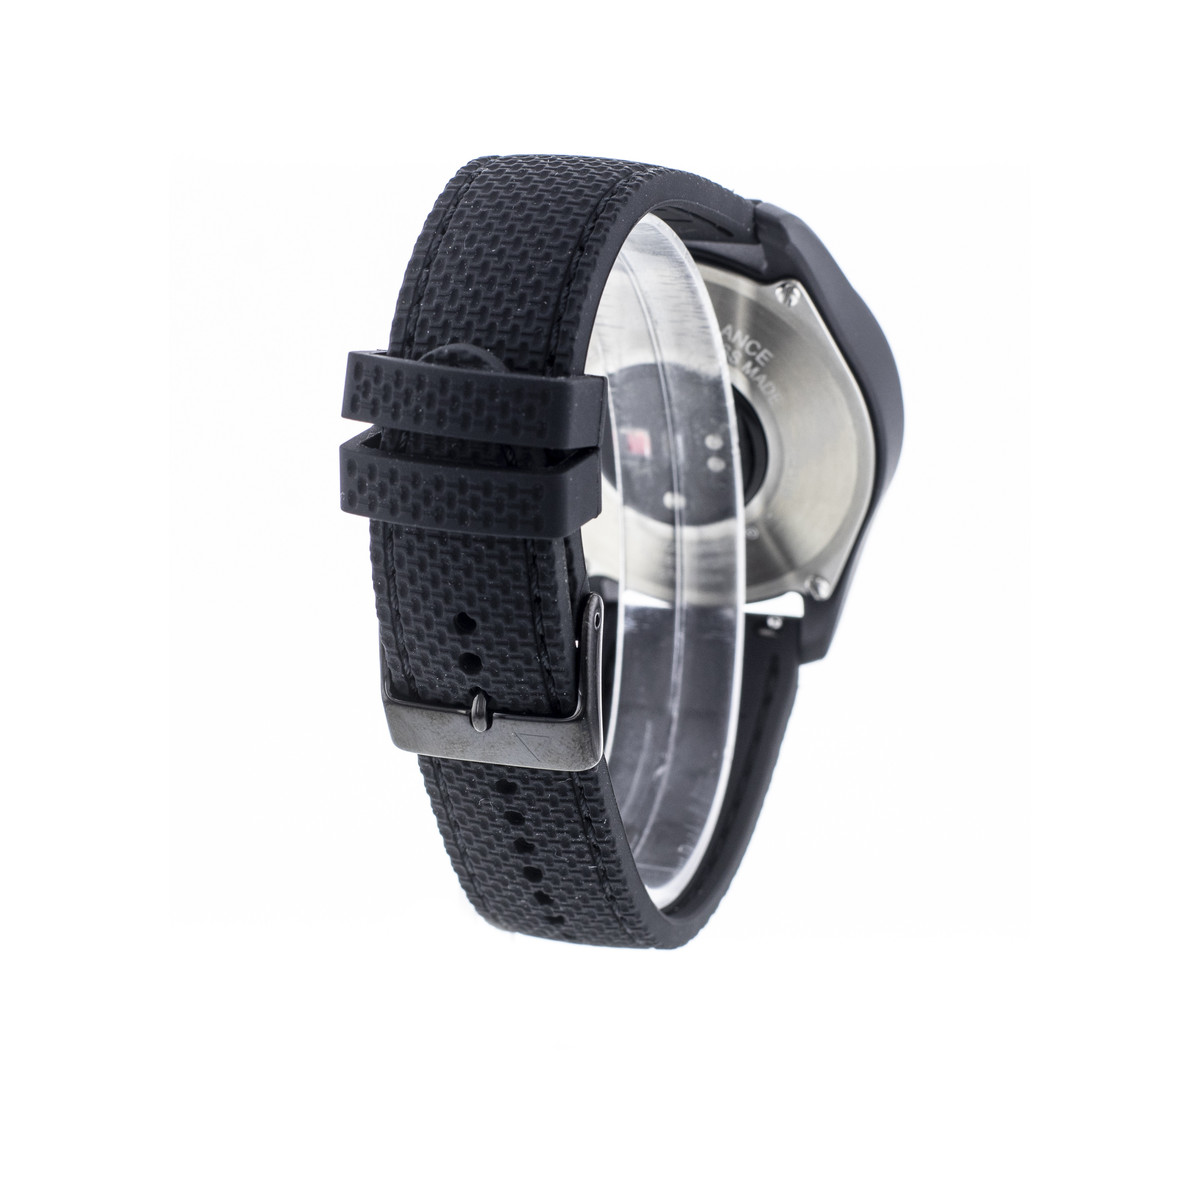 Montre d'occasion Alpina Startimer X homme fibre de verre bracelet caoutchouc noir - vue 3